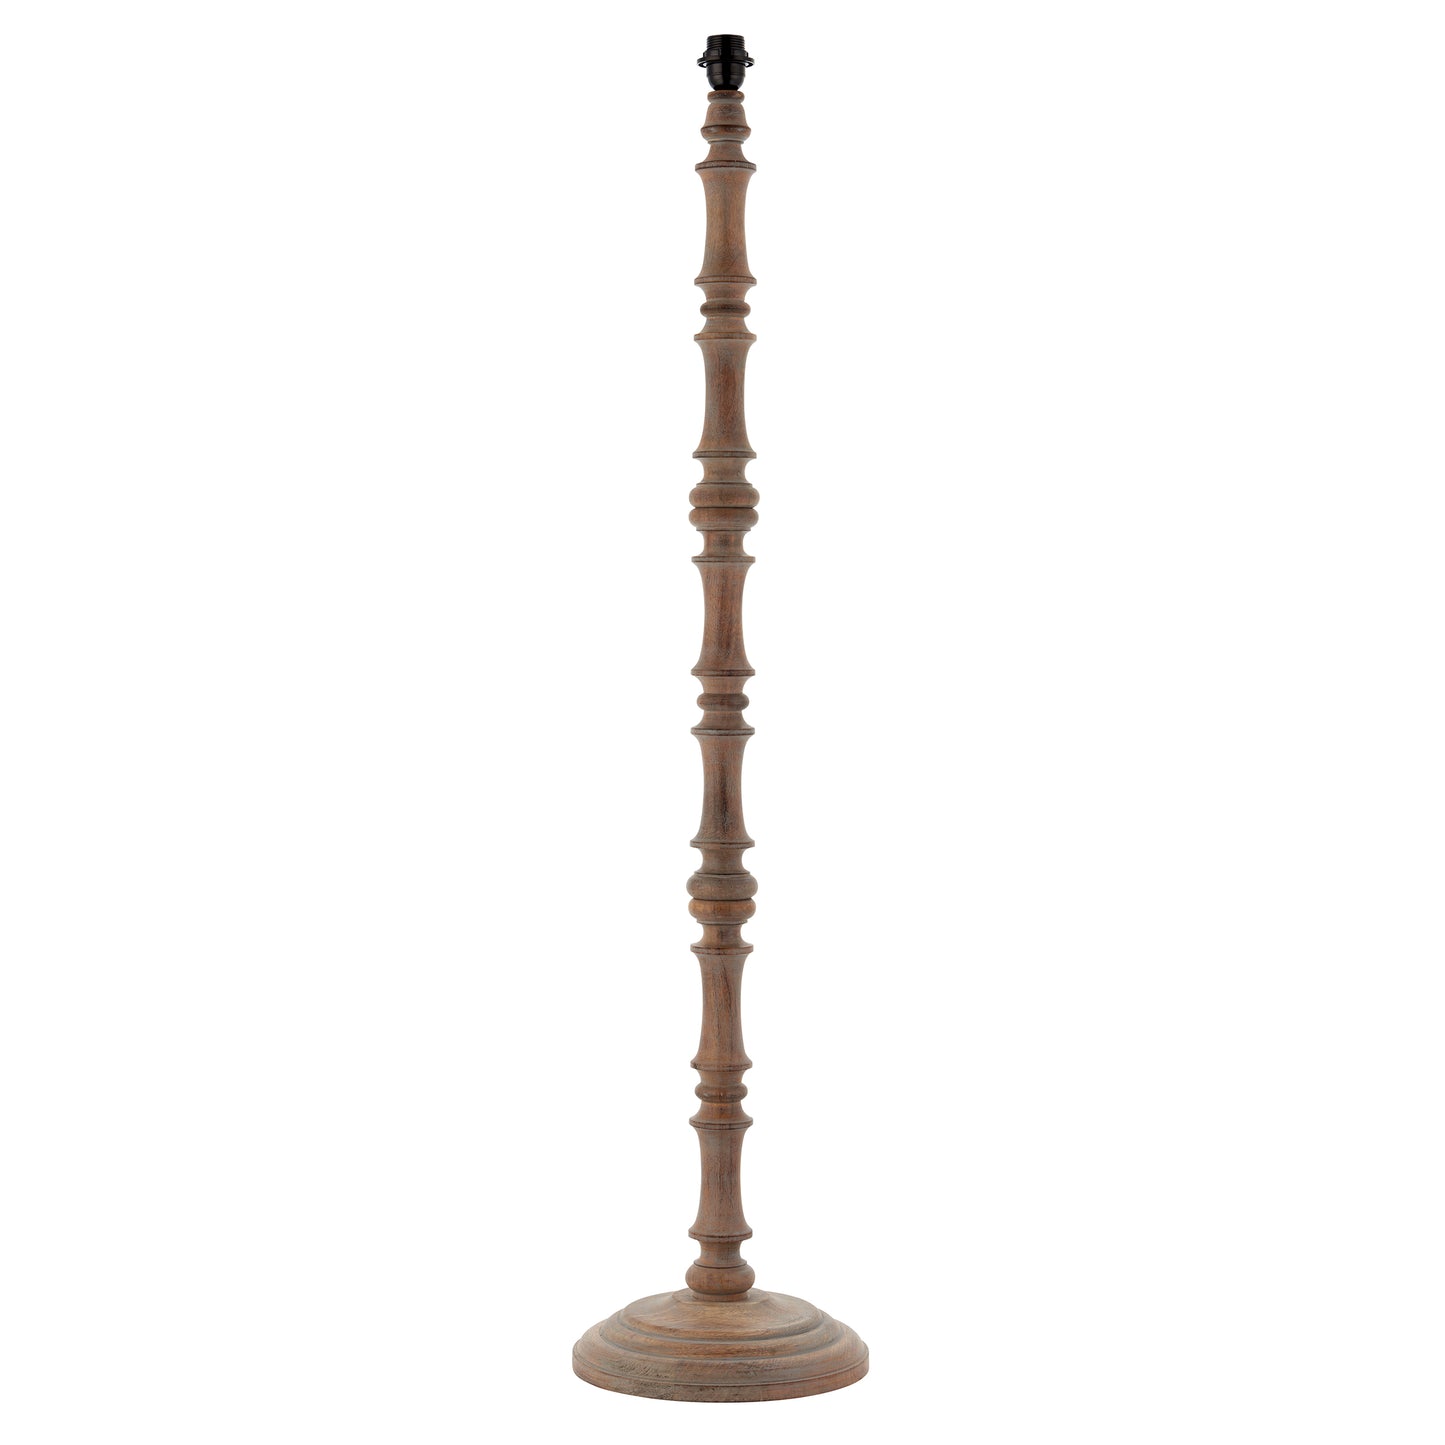 Elijah Rustic Style Wooden Floor Lamp